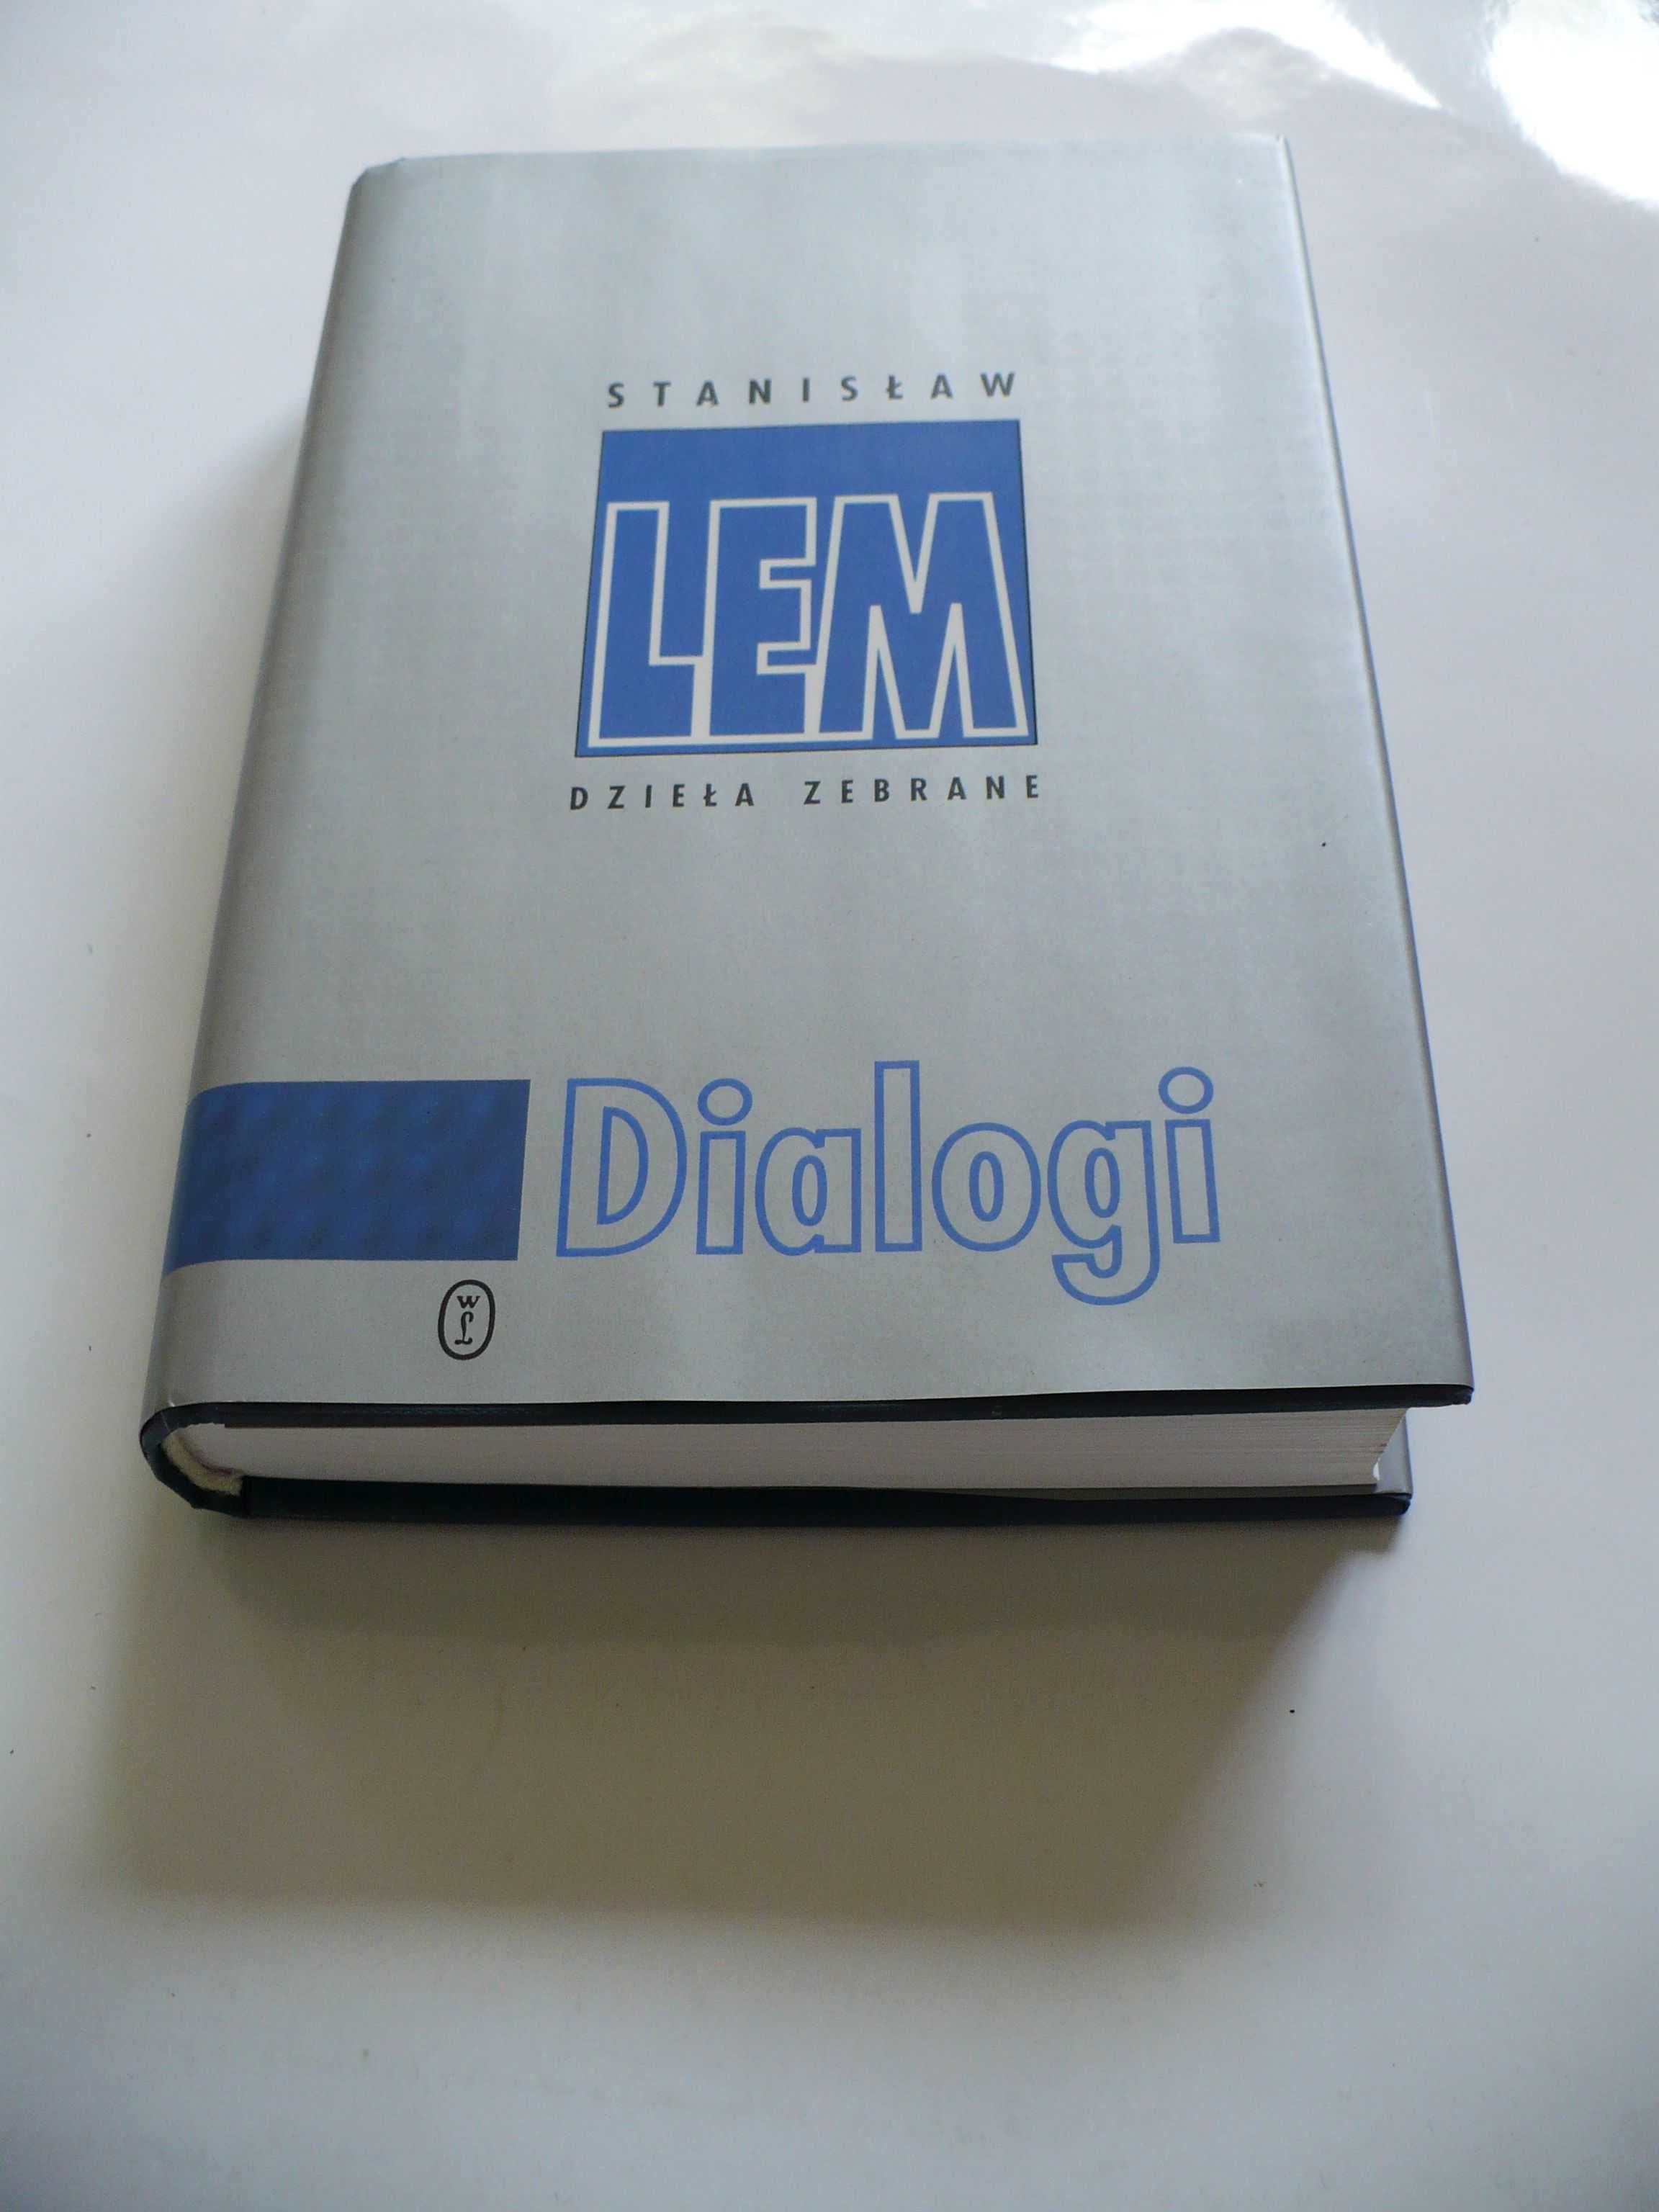 LEM Dialogi 2001 Dzieła zebrane Srebrna Seria stan idealny jak nowa